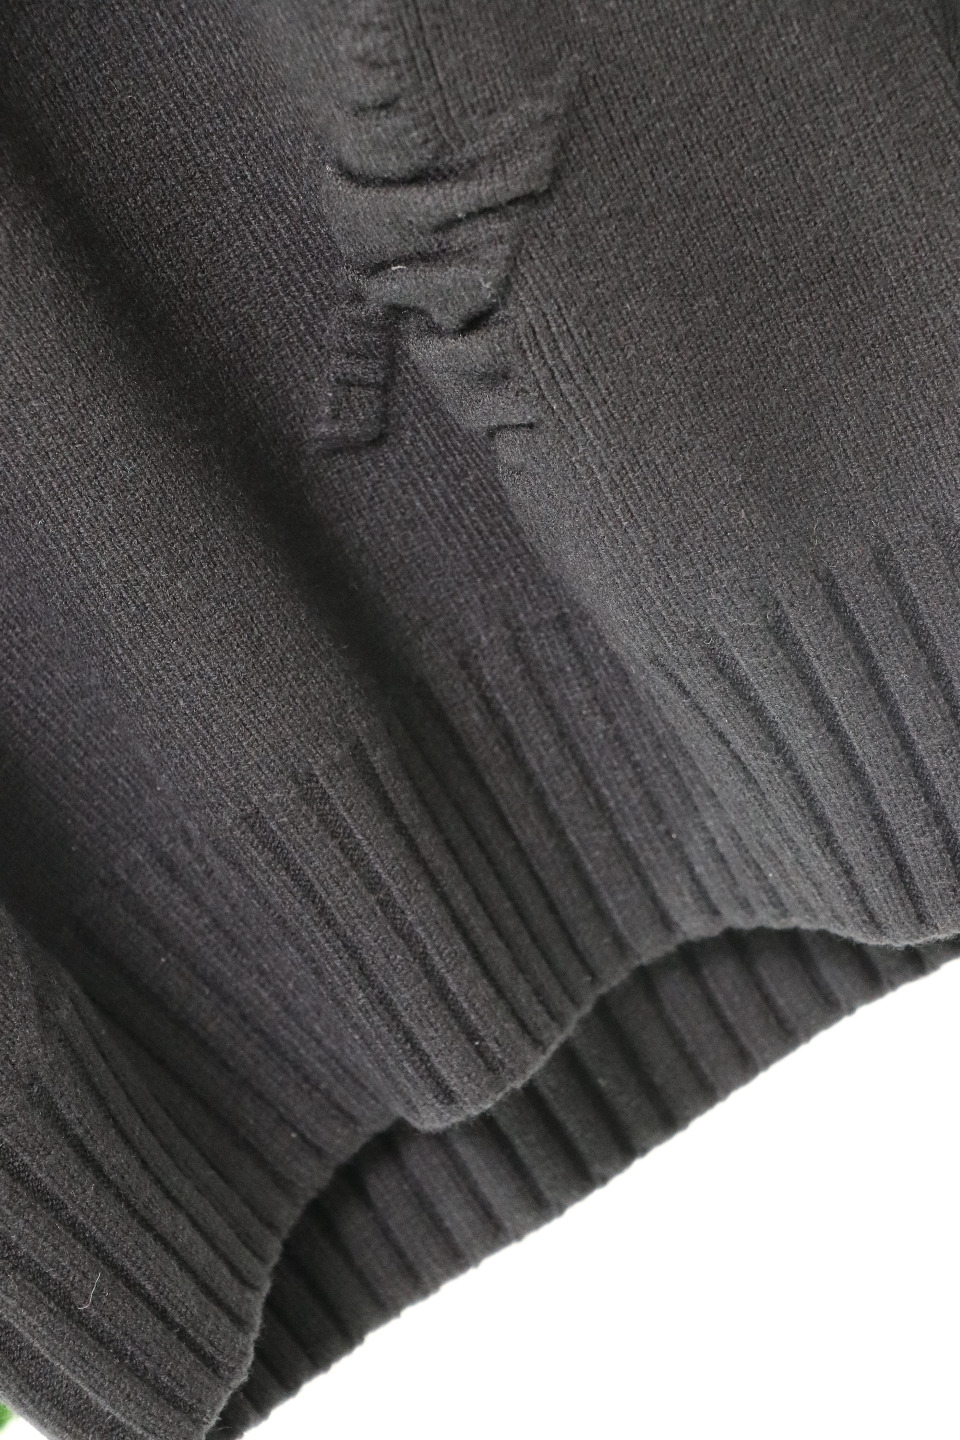 肌寒い季節に欠かせない ジバンシィ ニット偽物 柔らかい 暖かい トップス セーター メンズ シンプル 2色可選_5